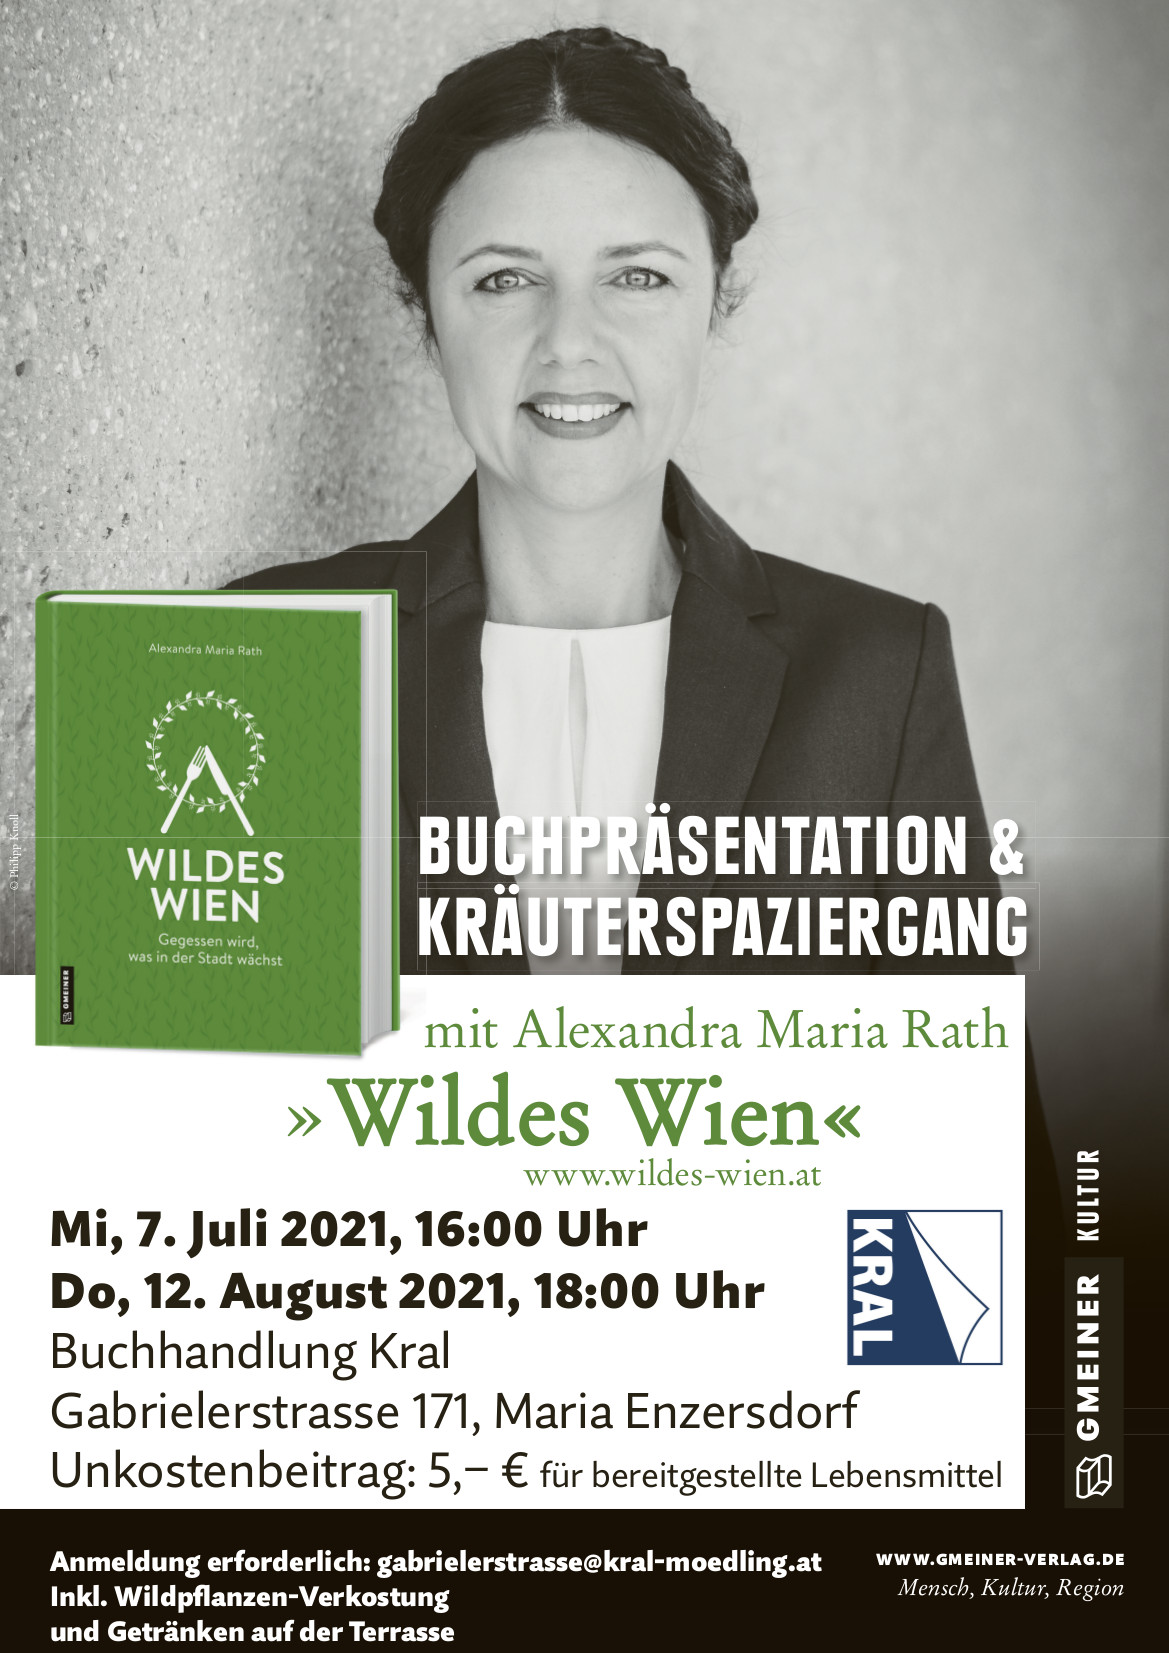 Wildes Wien